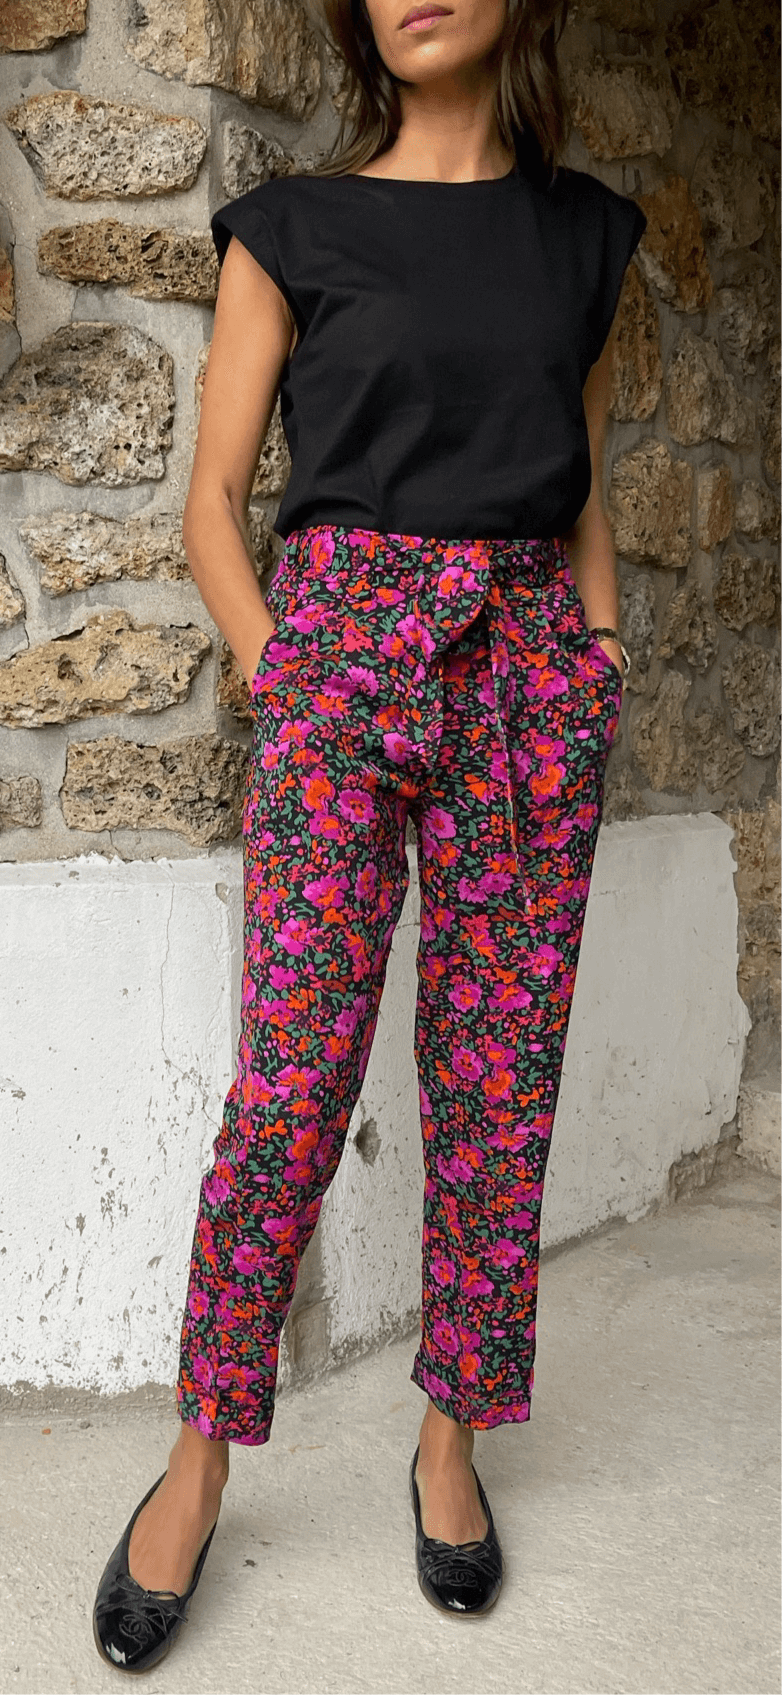 Pantalon pour femme avec imprimé floral coloré sur fond pierre